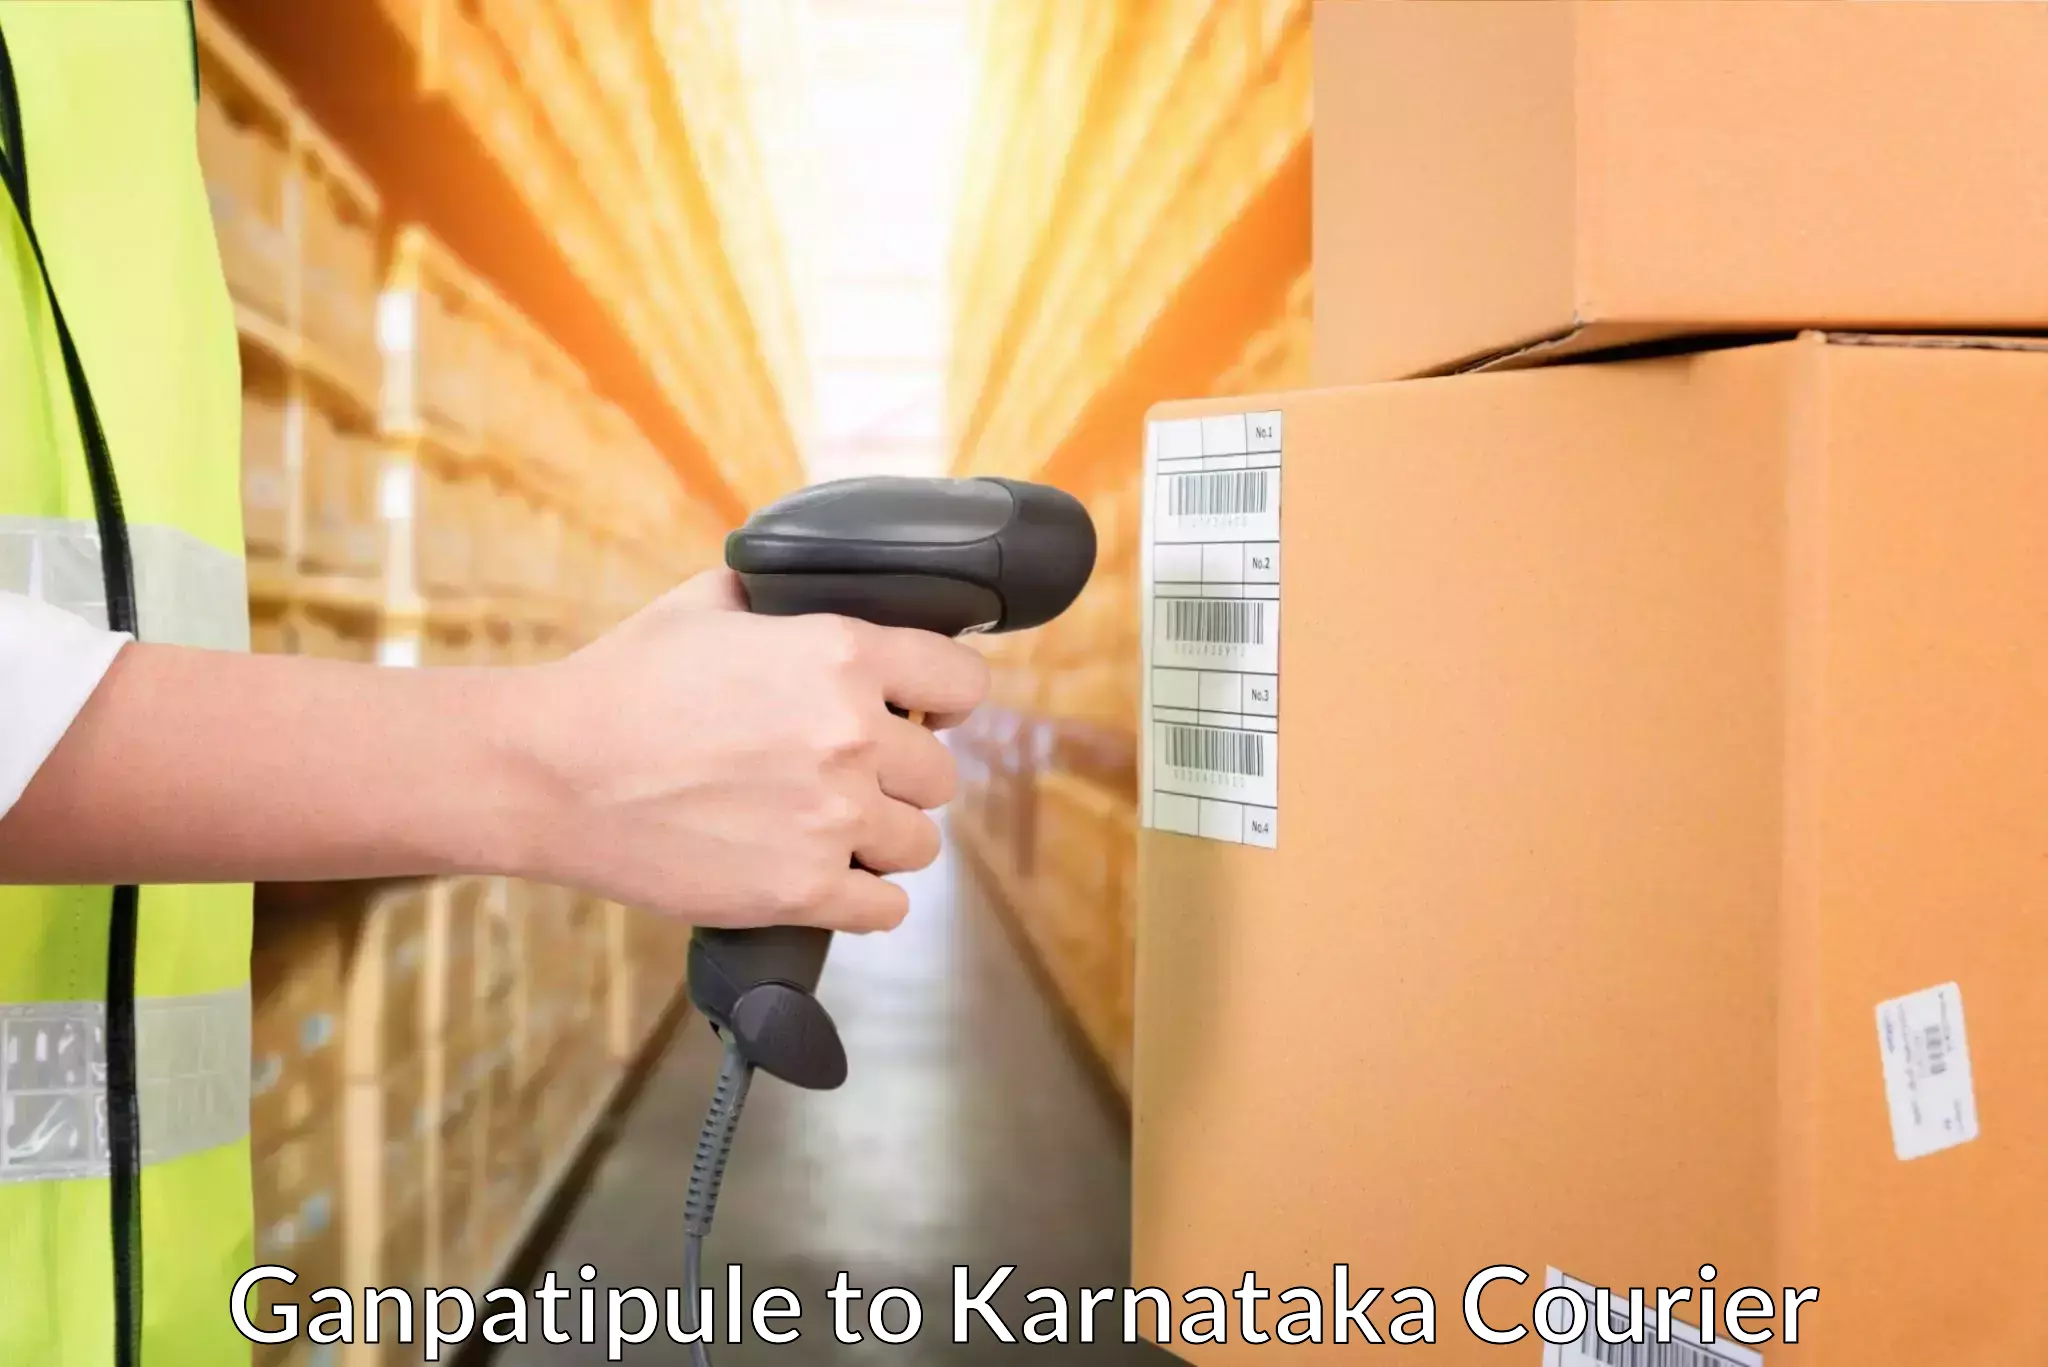 Next-day freight services Ganpatipule to Srirangapatna